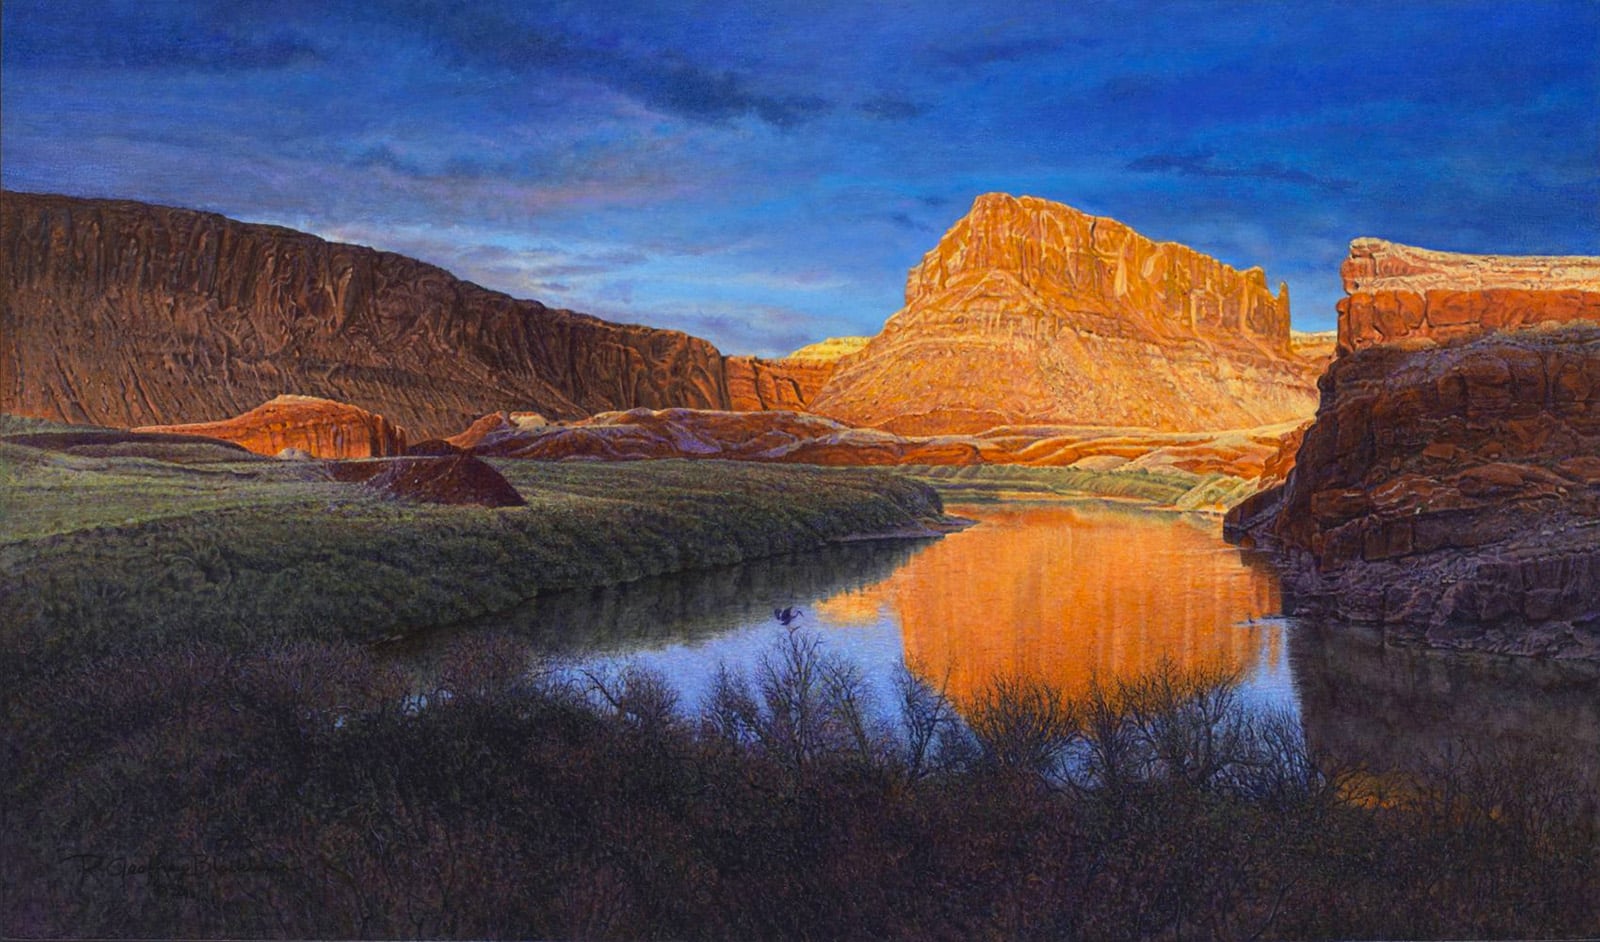 Twilight On The Colorado, Oil On Panel, 14x24 by R. Geoffrey Blackburn